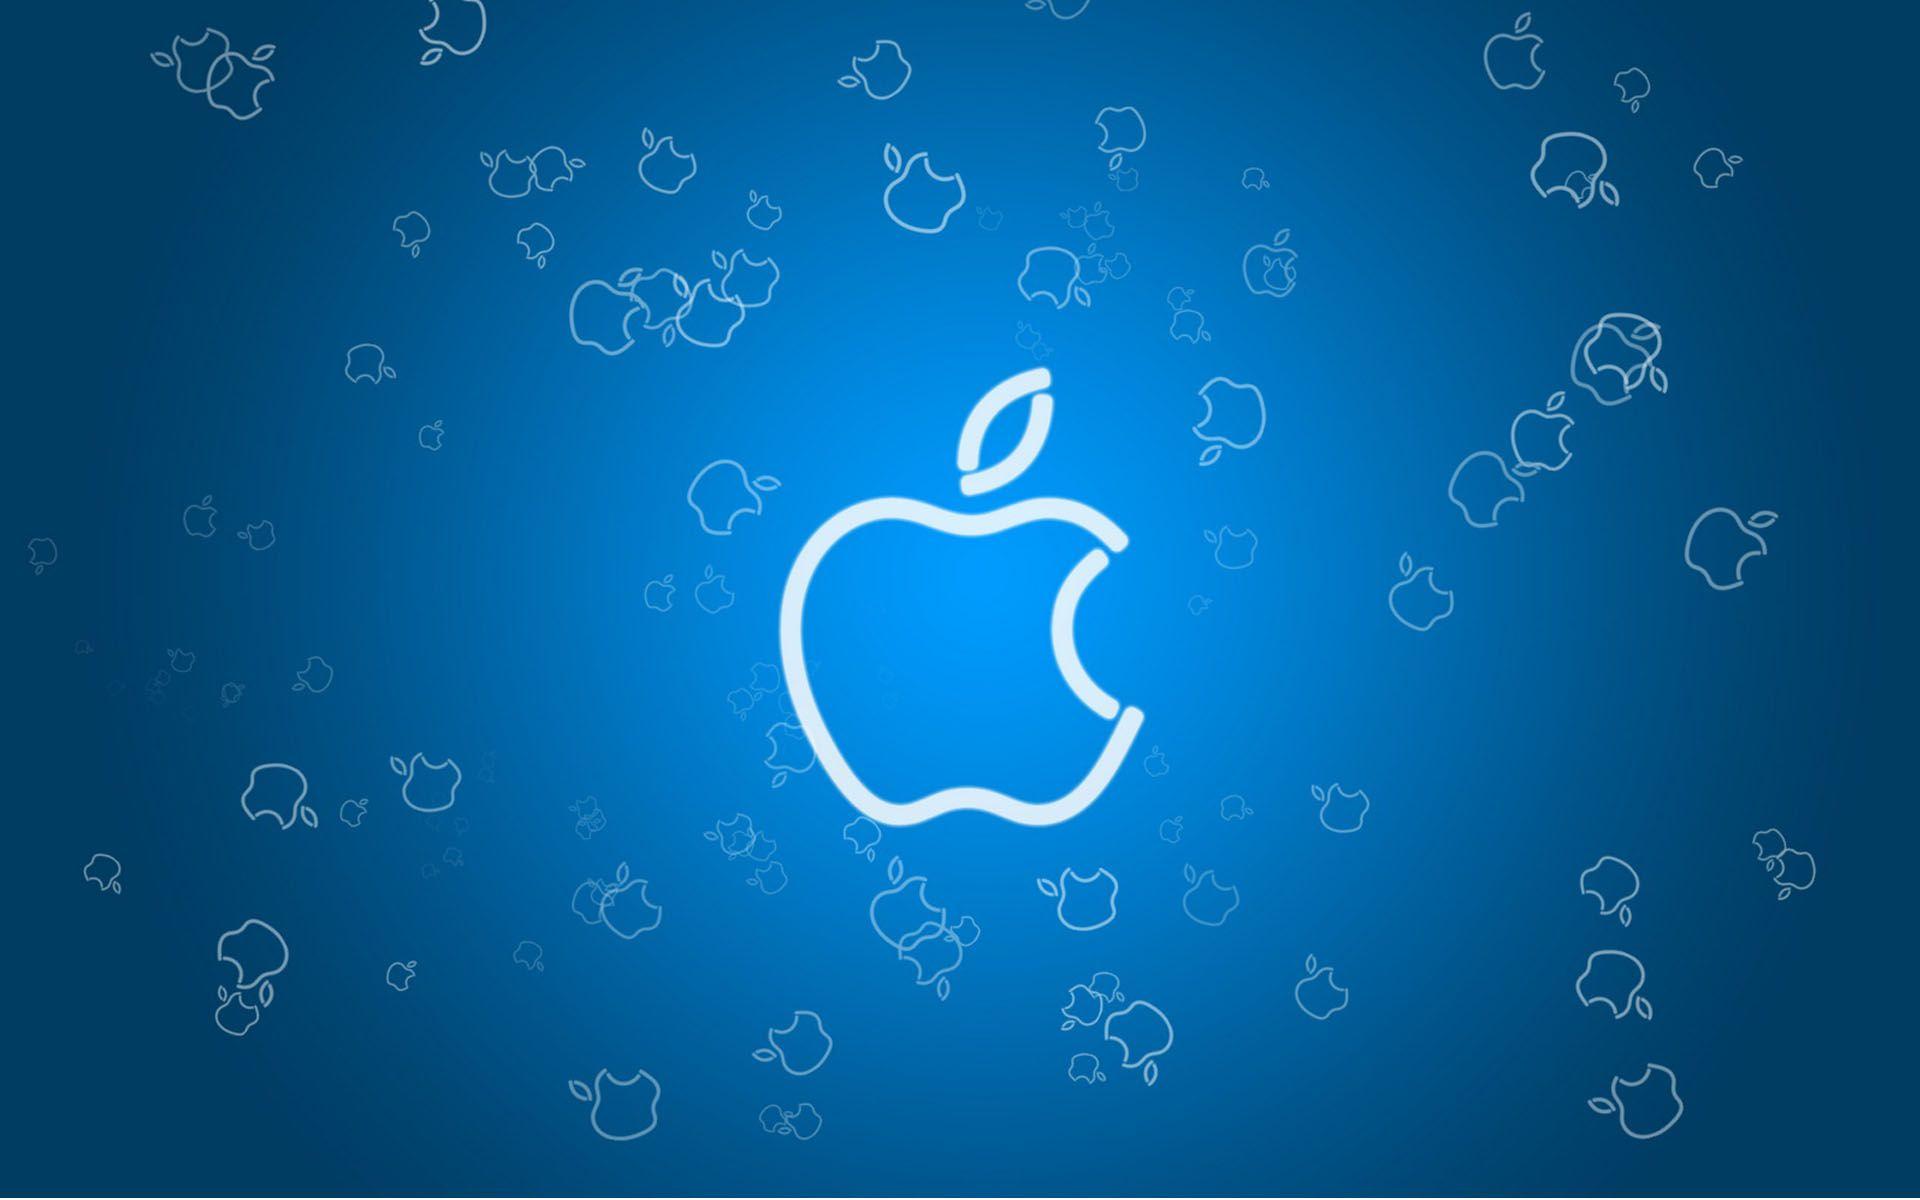 Red White Blue Apple Logo - Blue Apple Logo Wallpaper IPhone Wallpaper